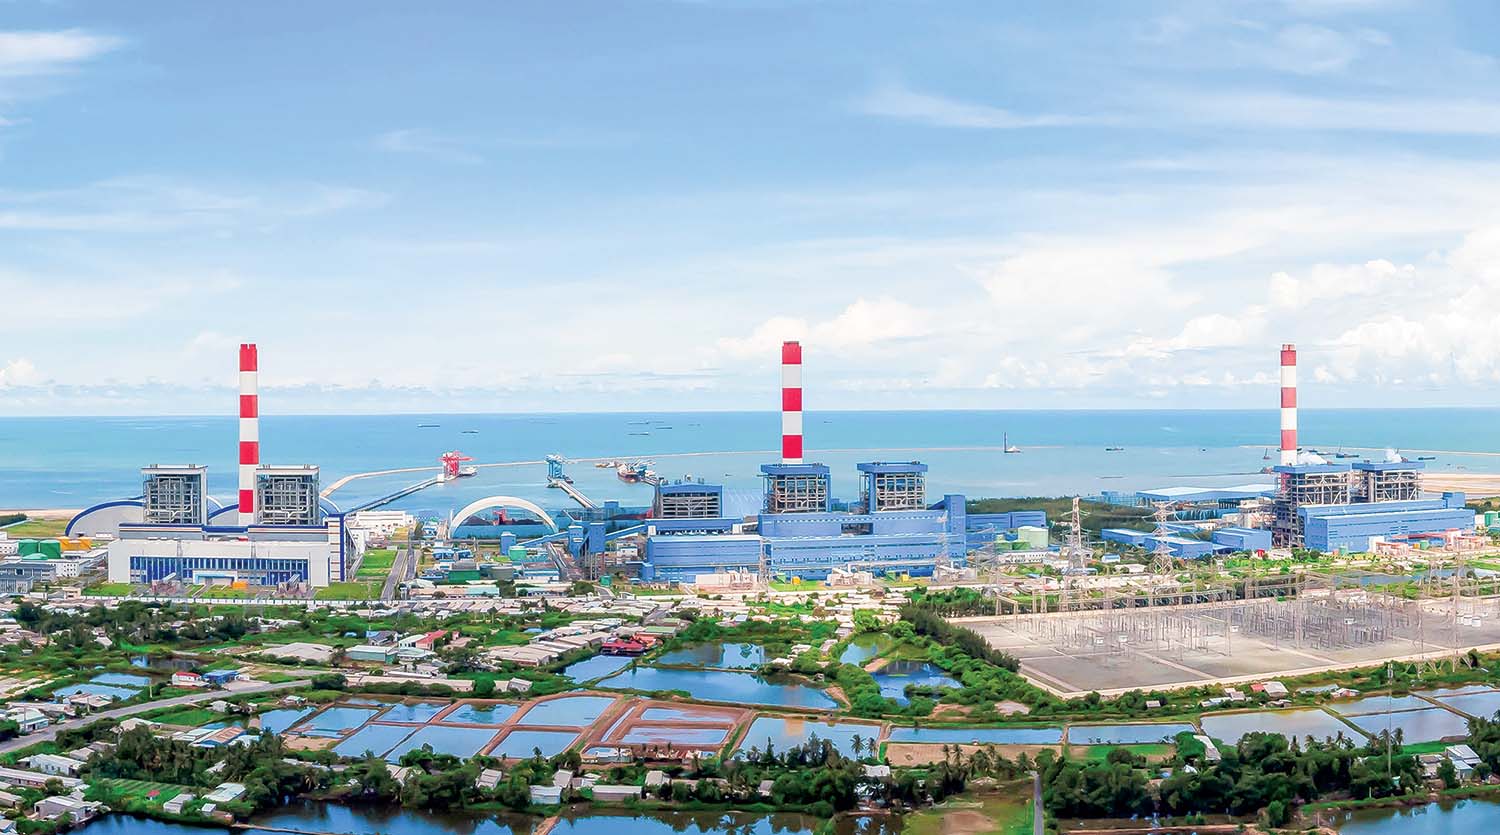 Nhà máy Nhiệt điện Duyên Hải 1, Duyên Hải 3 và Duyên Hải 3 mở rộng là những Dự án trọng điểm đã được EVNGENCO1 hoàn thành trong giai đoạn 10 năm vừa qua